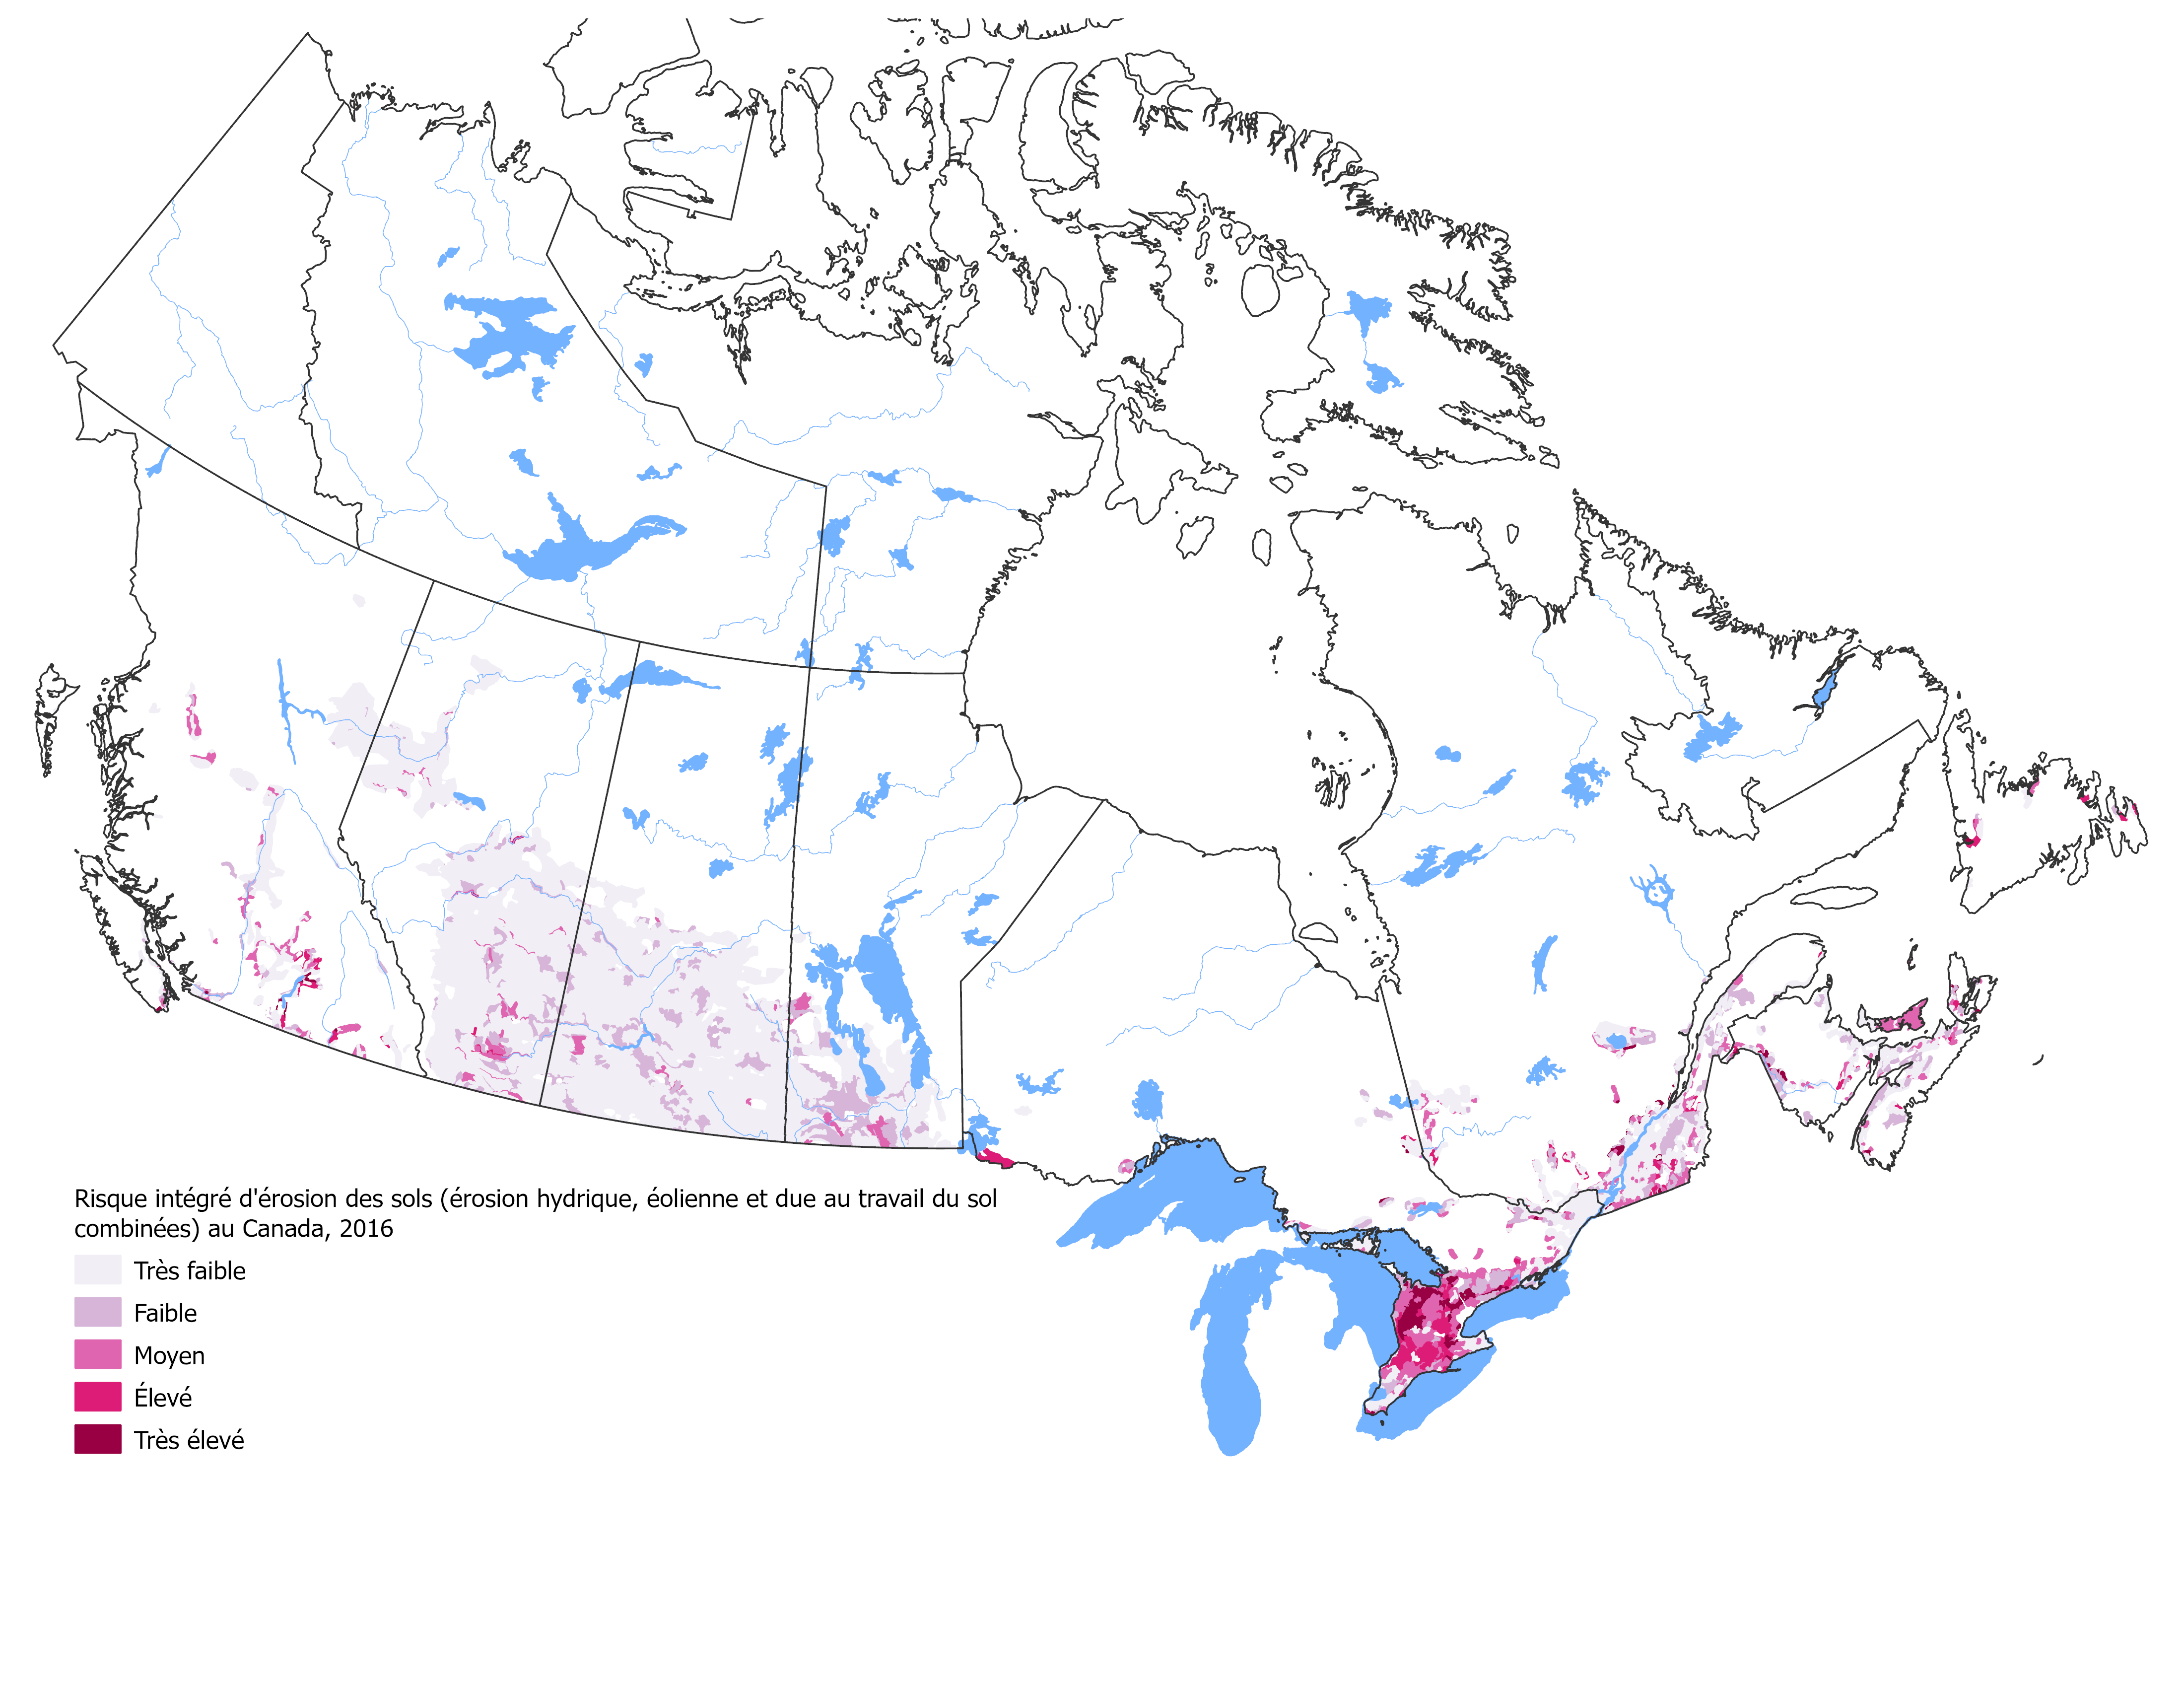 La figure 1 illustre le risque intégré d'érosion du sol (combinaison de l'érosion hydrique, de l'érosion éolienne et de l'érosion attribuable au travail du sol) au Canada en 2016, avec un code de couleurs basé sur le niveau de risque.